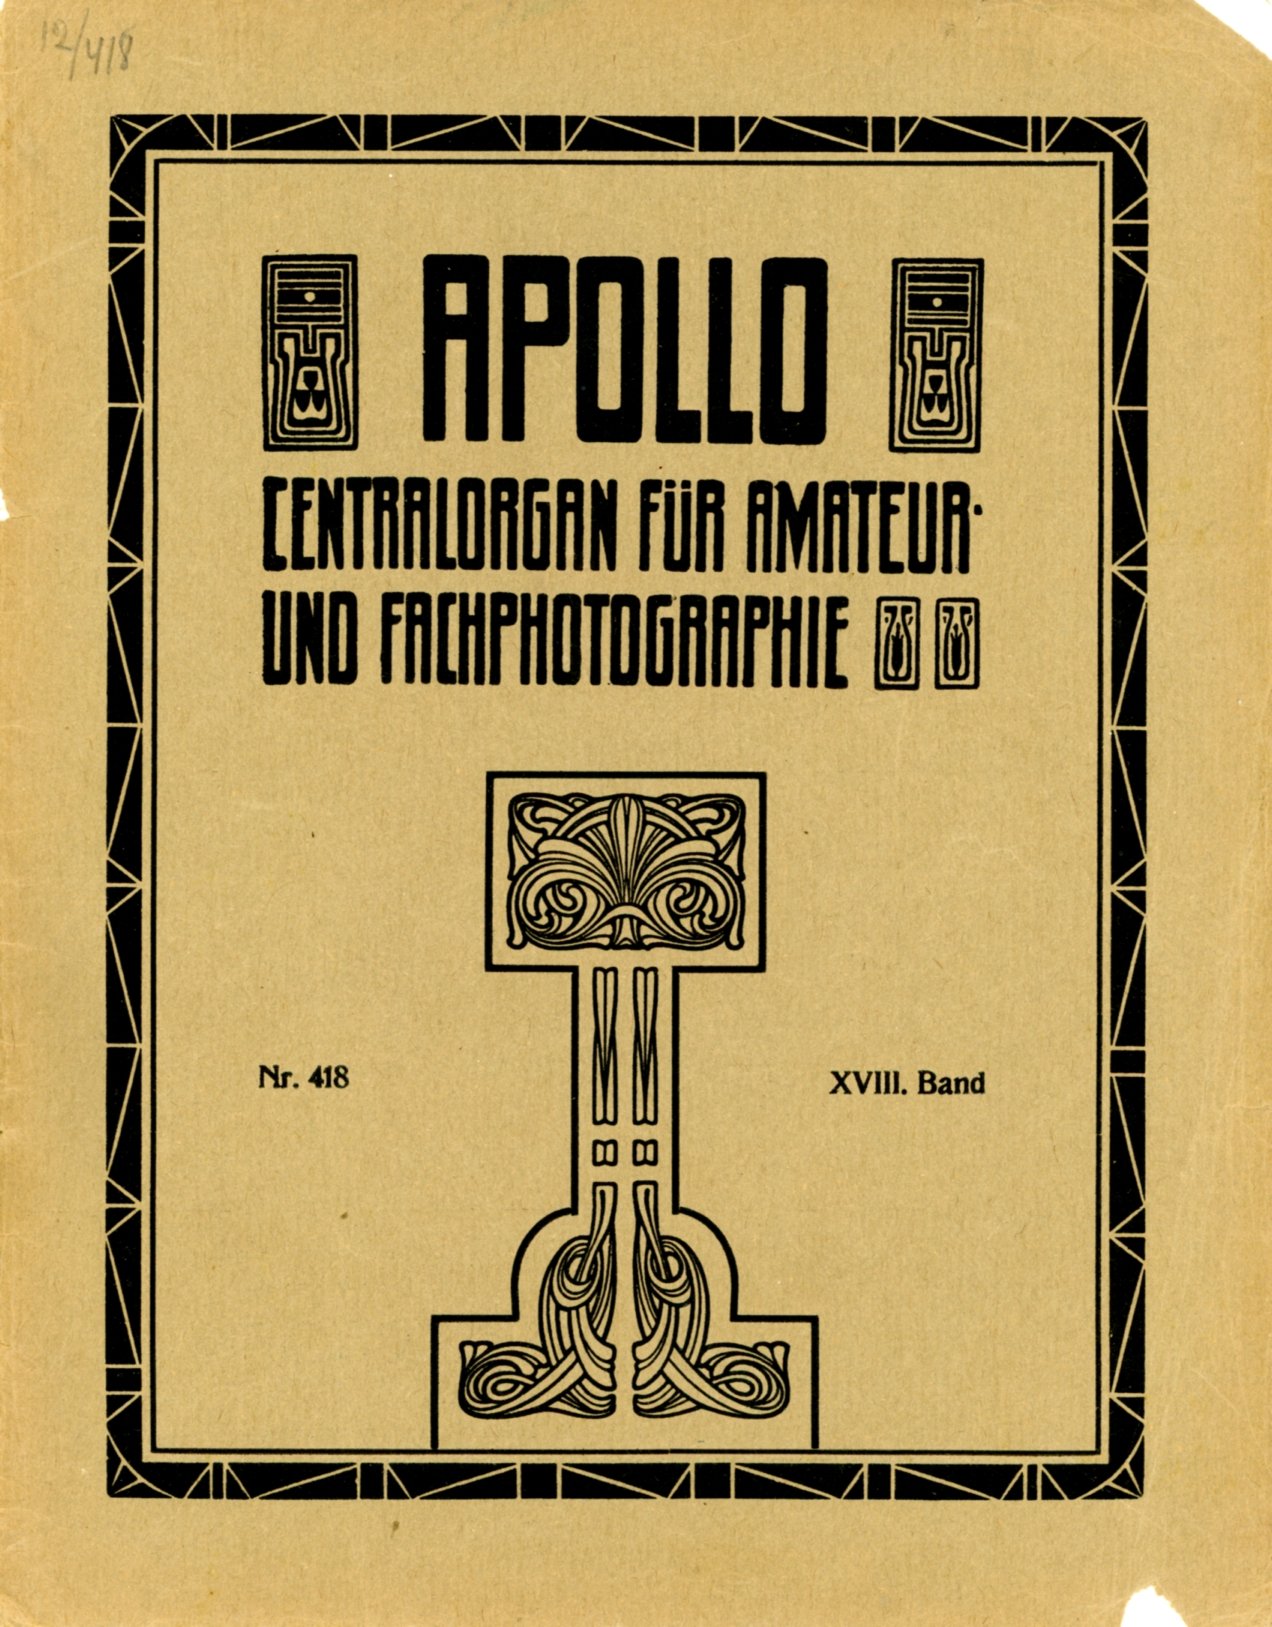 Журнал Apollo № 418, 22 November 1912 (Музей фотографії Київського національного університету технології та дизайну CC BY-NC-SA)